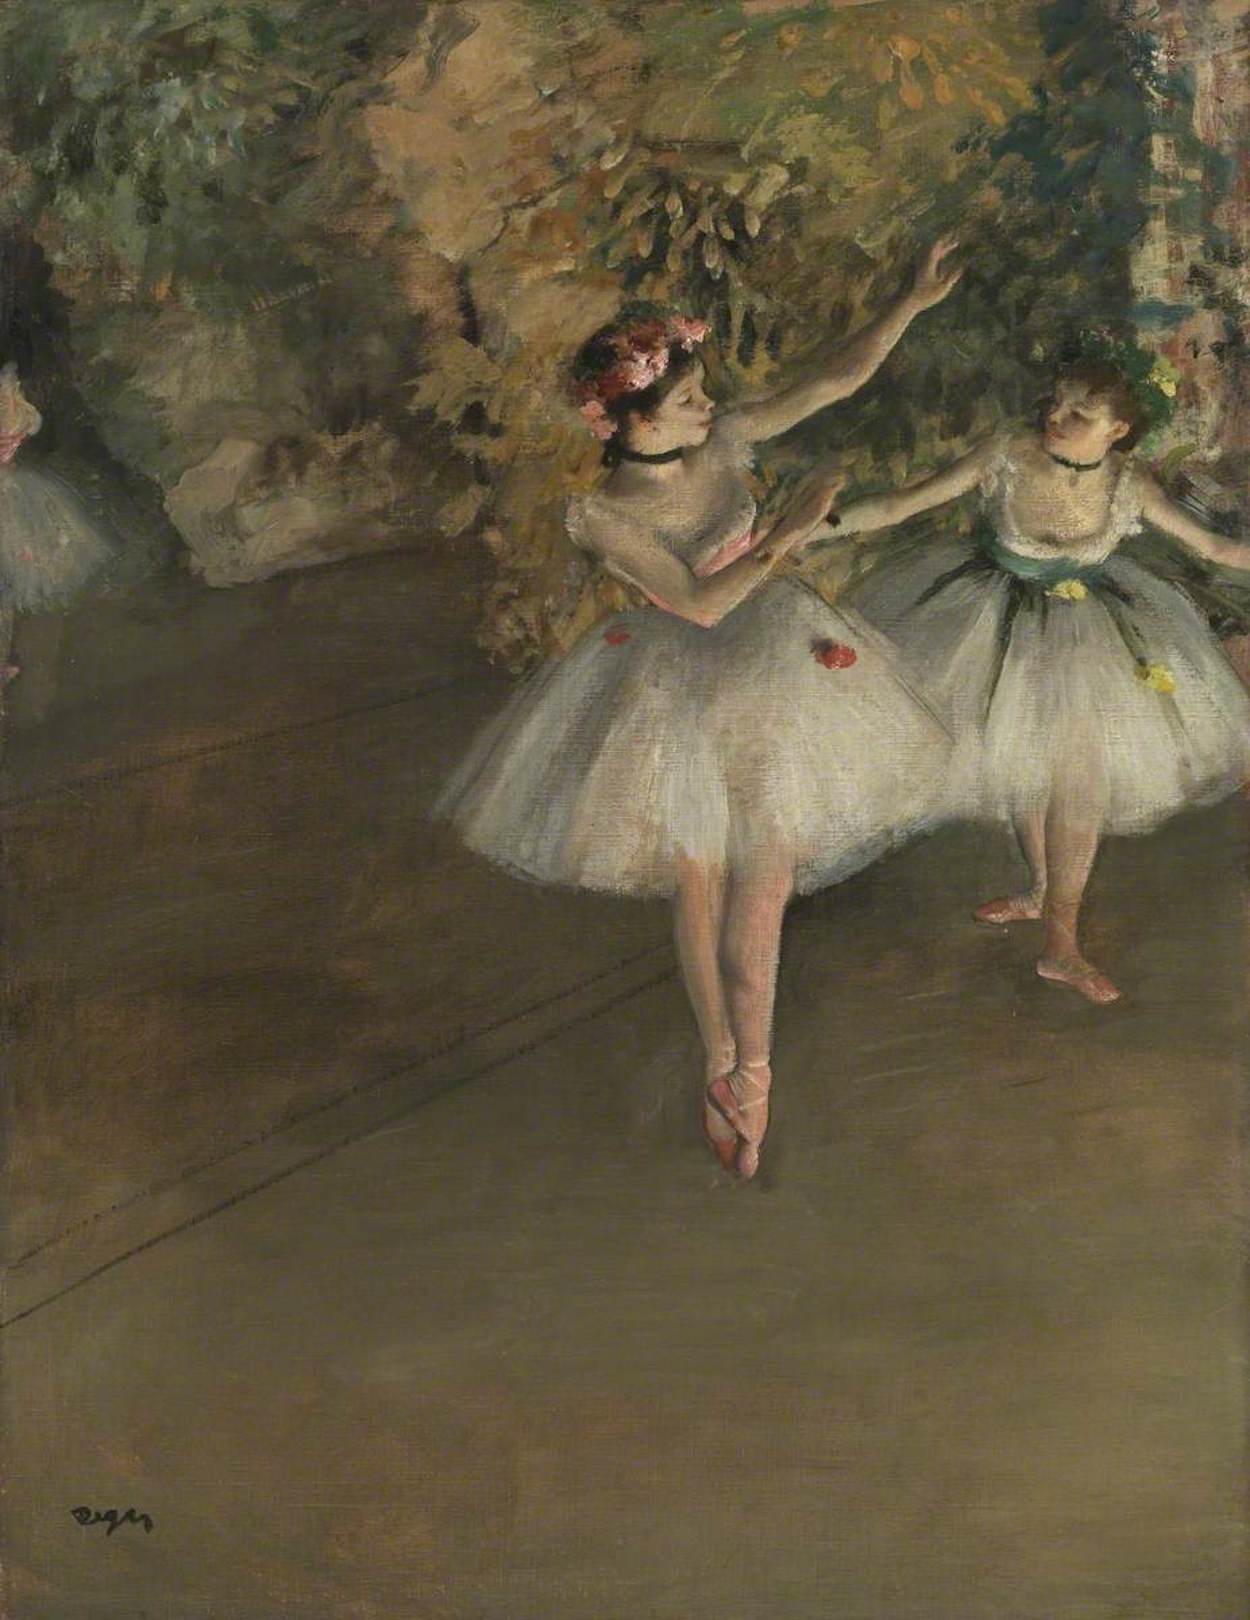 兩個在舞臺上的舞者 by Edgar Degas - 1874 - 61.5 × 46 cm 